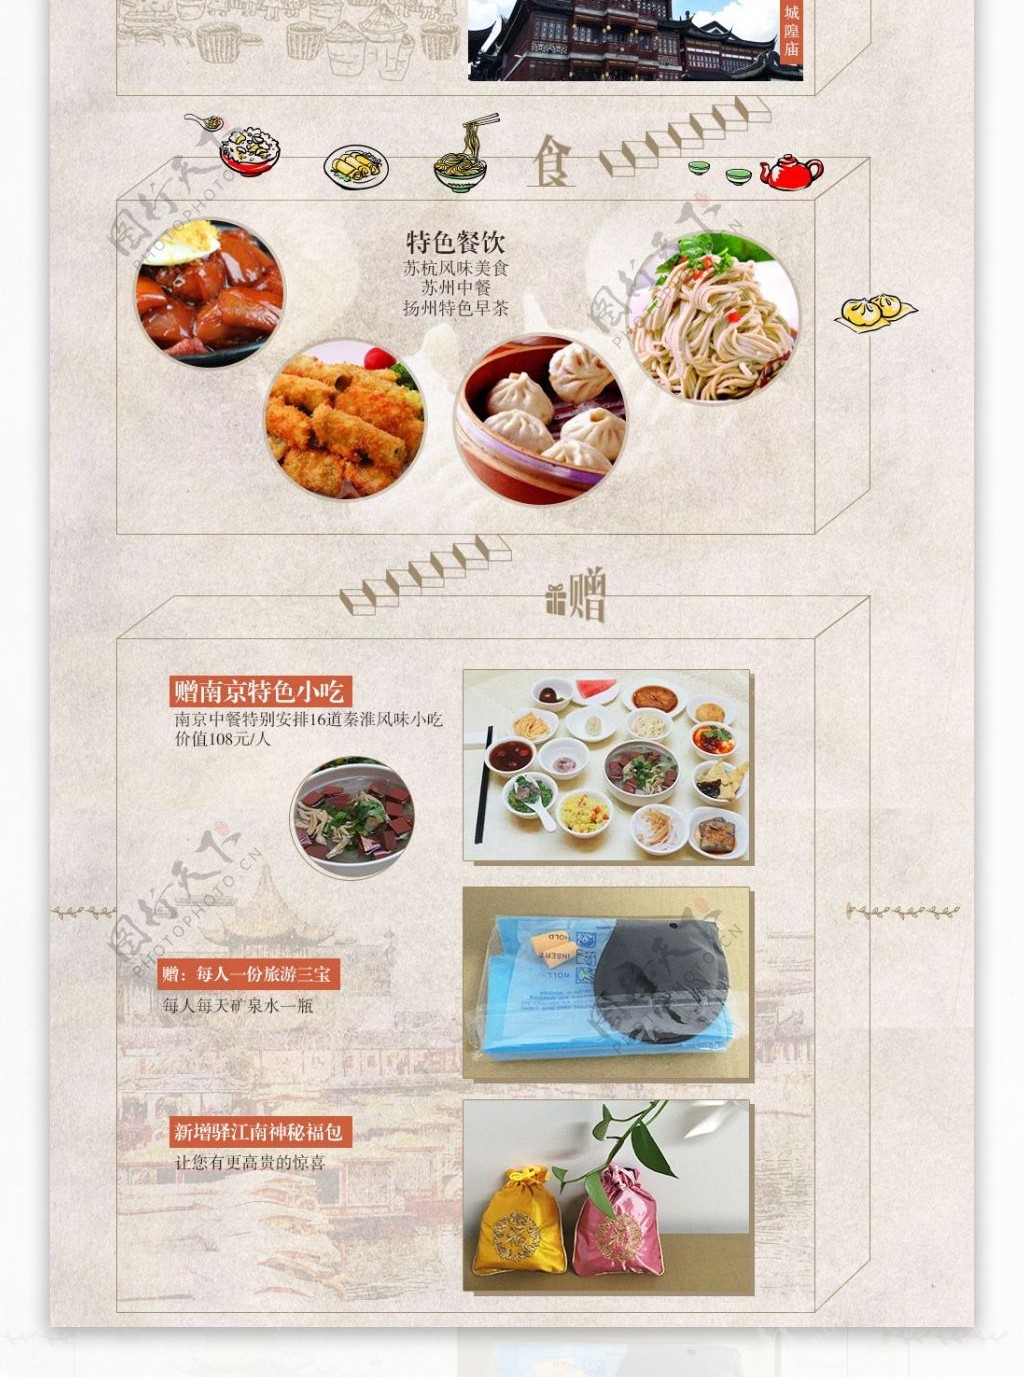 驿动江南旅游电商网页设计海报特色